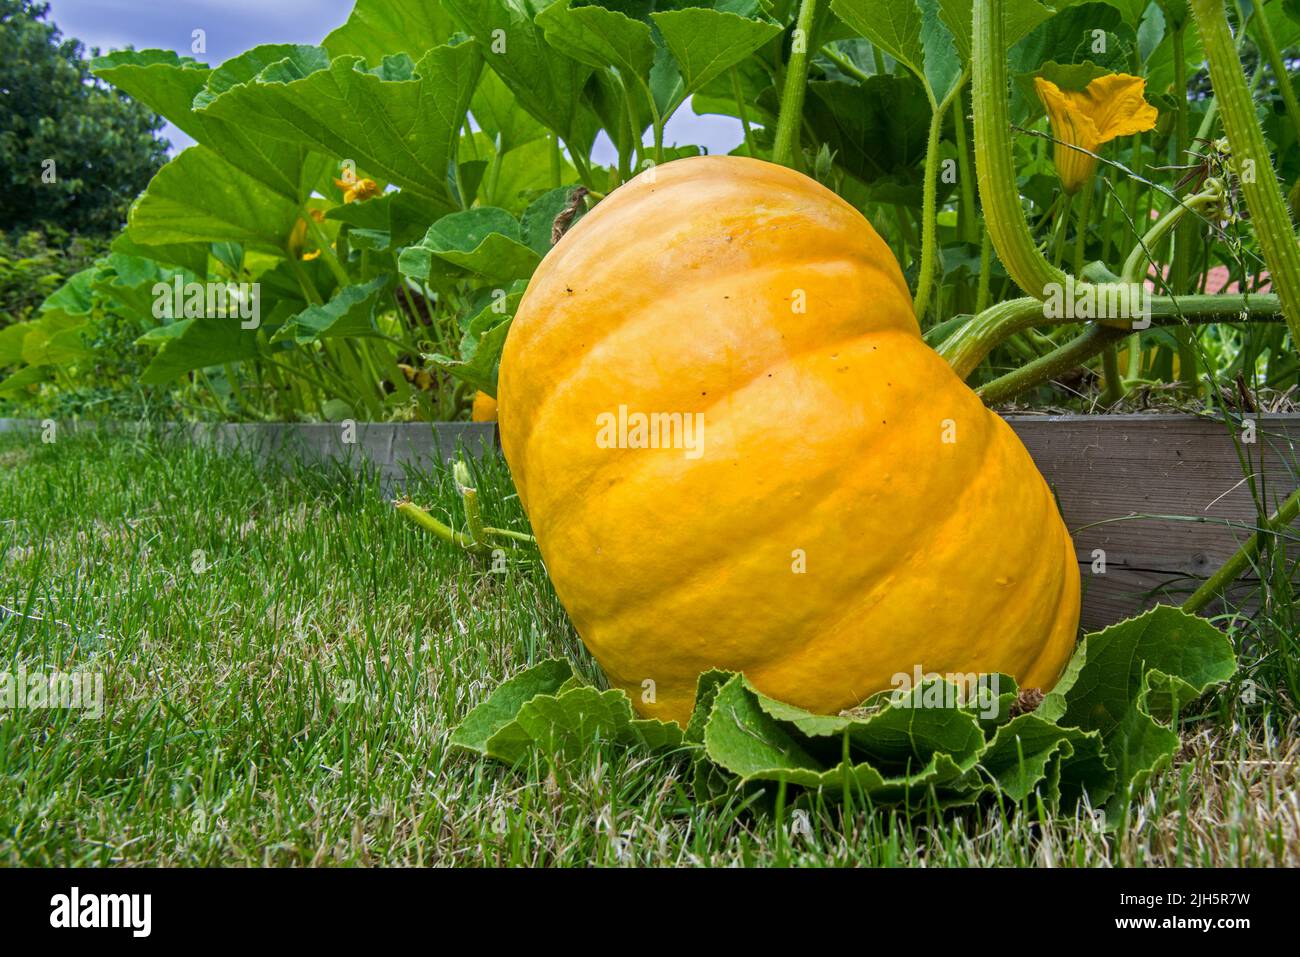 Zucca coltivata (Cucurbita maxima) che mostra frutta commestibile e grandi foglie verdi in orto / giardino cucina / allotment in estate Foto Stock